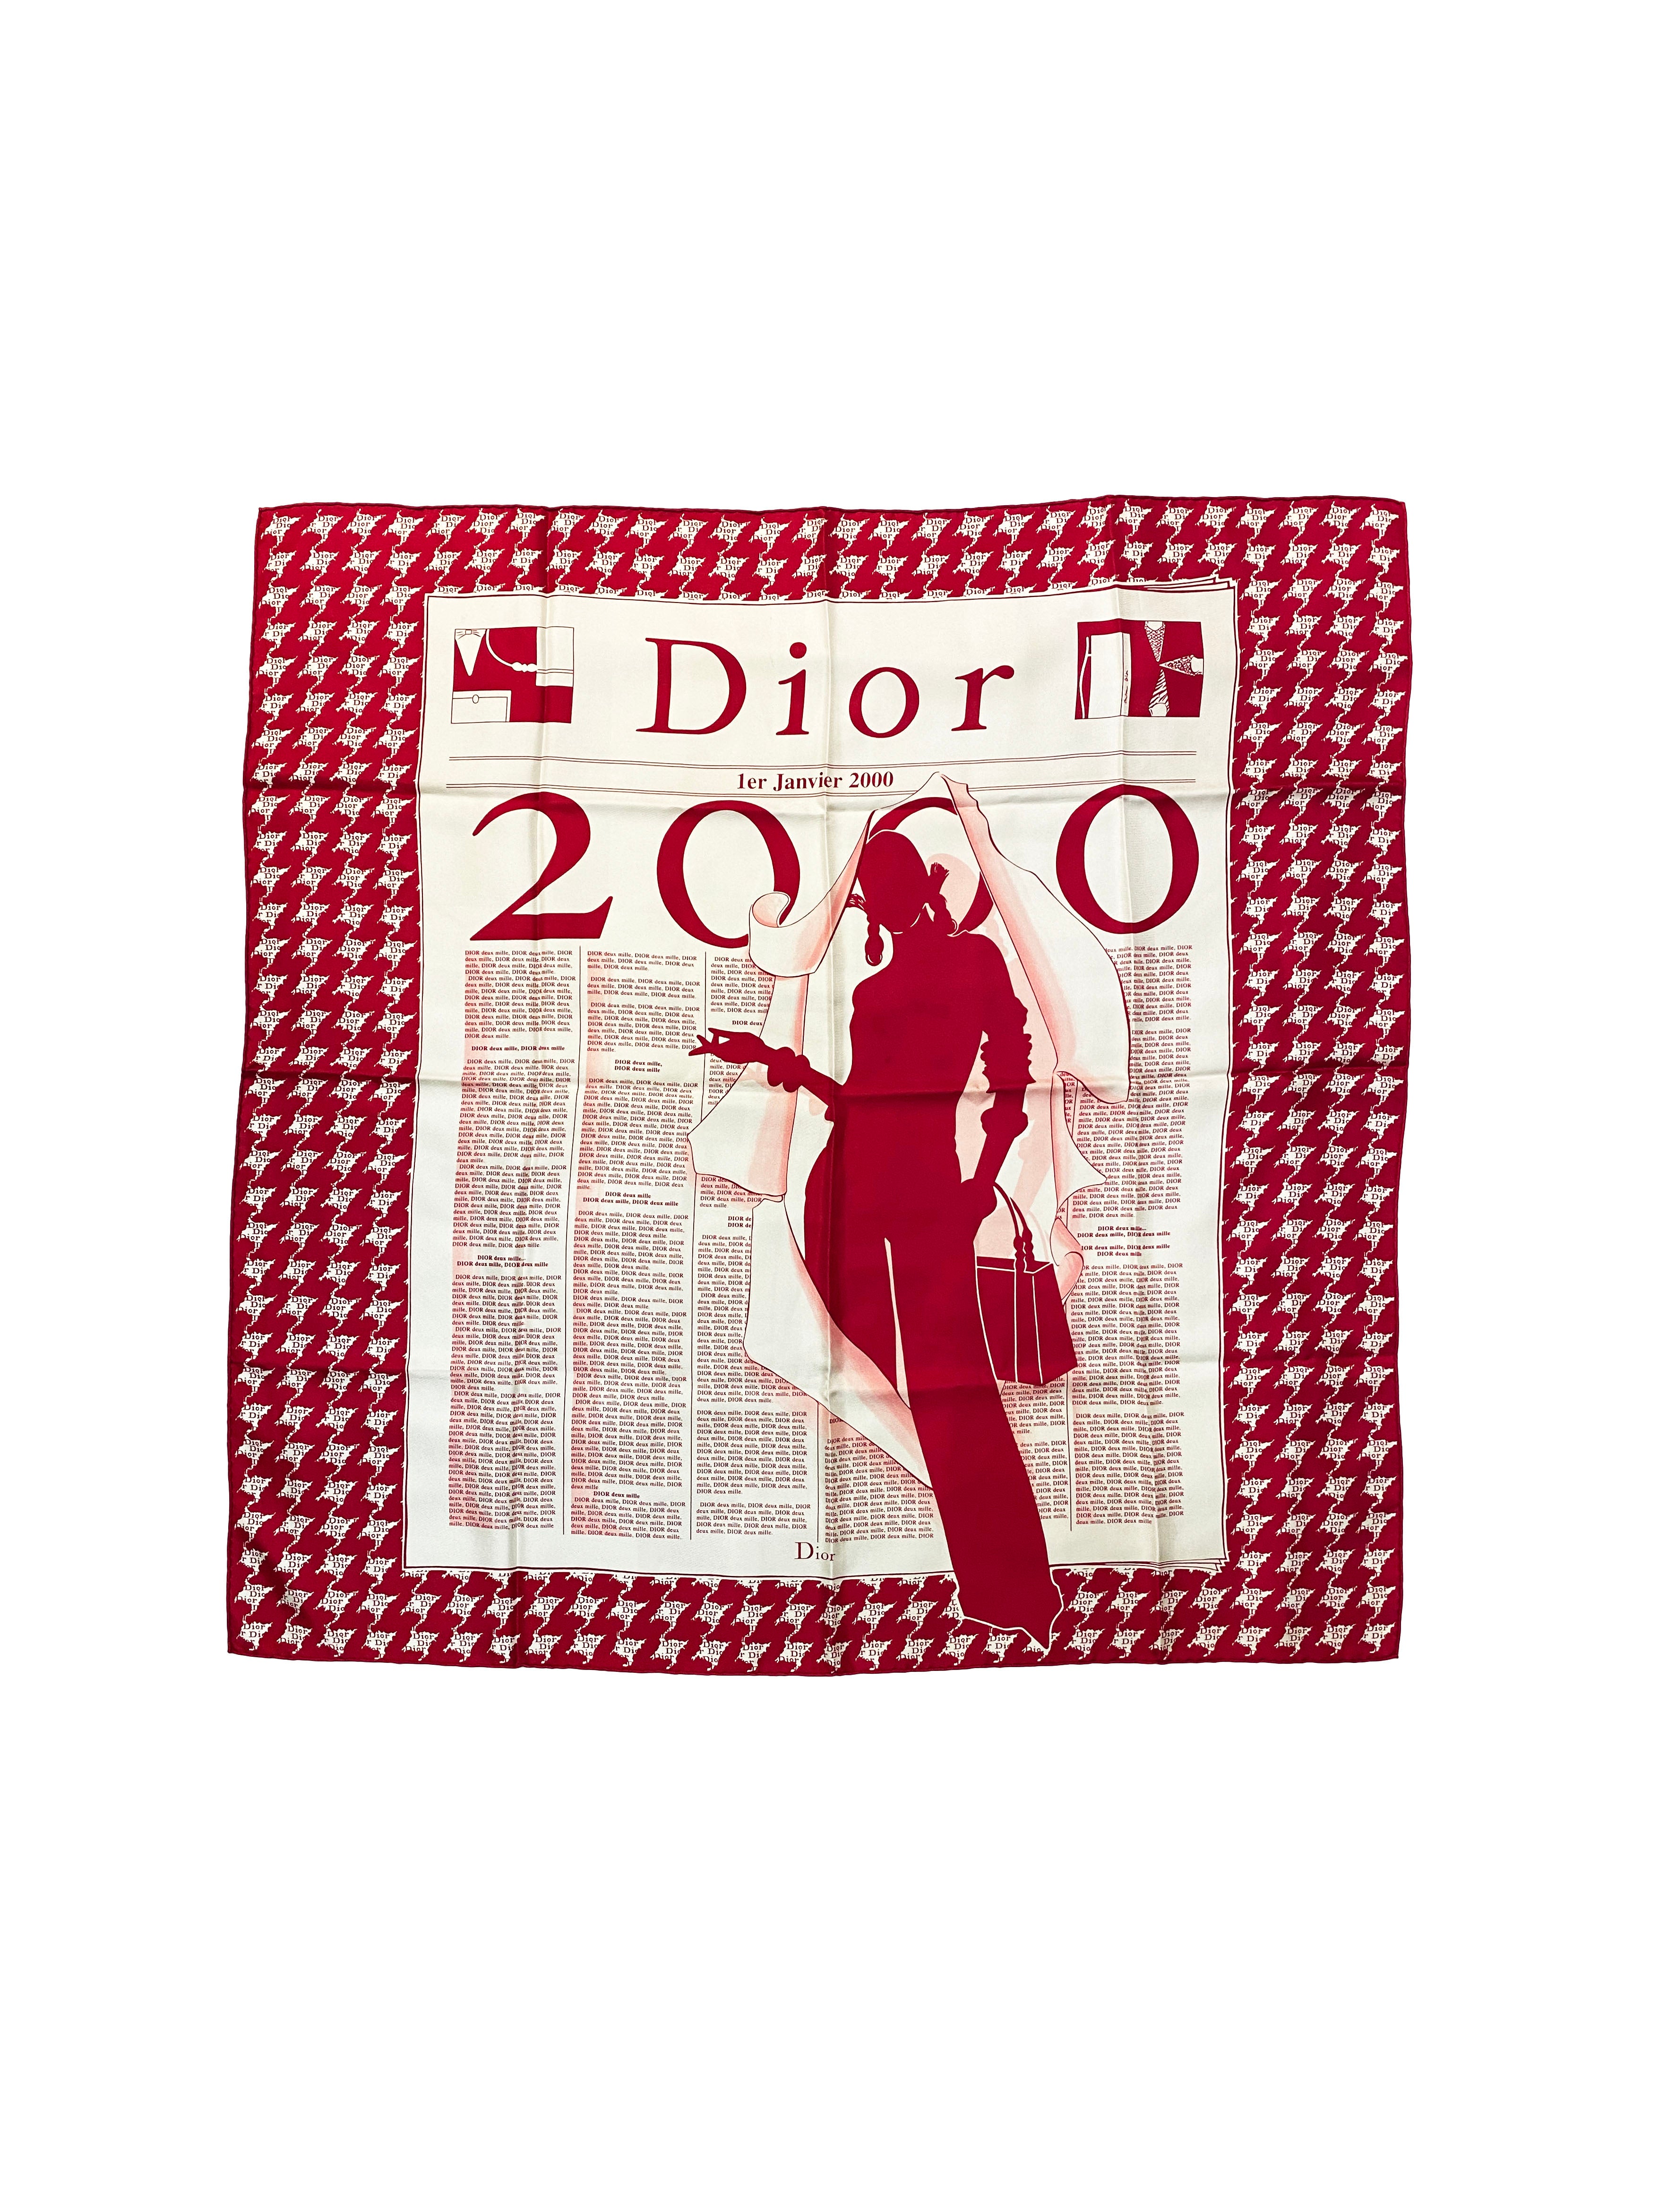 dior-2000-scarf-1.jpg